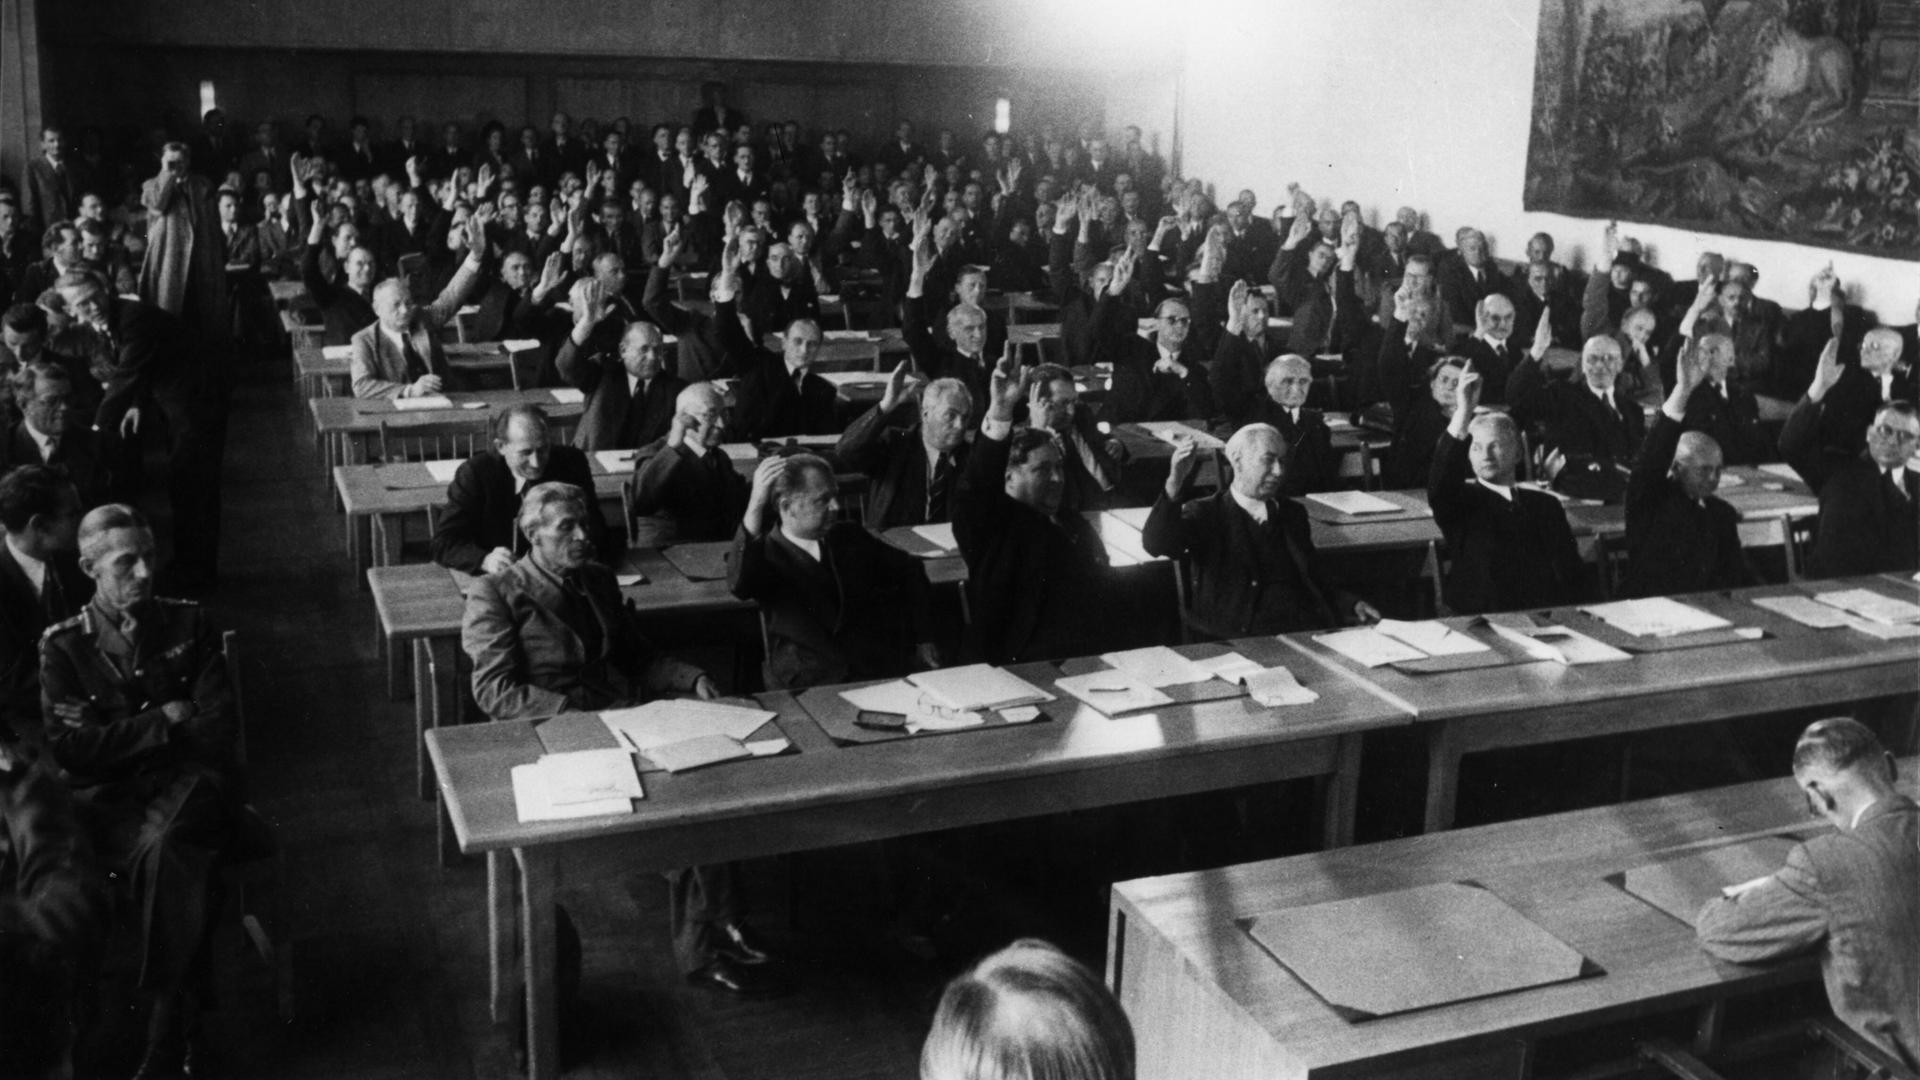 Annahme des Grundgesetzes: Das Plenum des Parlamentarischen Rates nimmt in 3. Lesung am 8. Mai 1949 den revidierten Grundgesetzentwurf mit 53 gegen 12 Stimmen an.